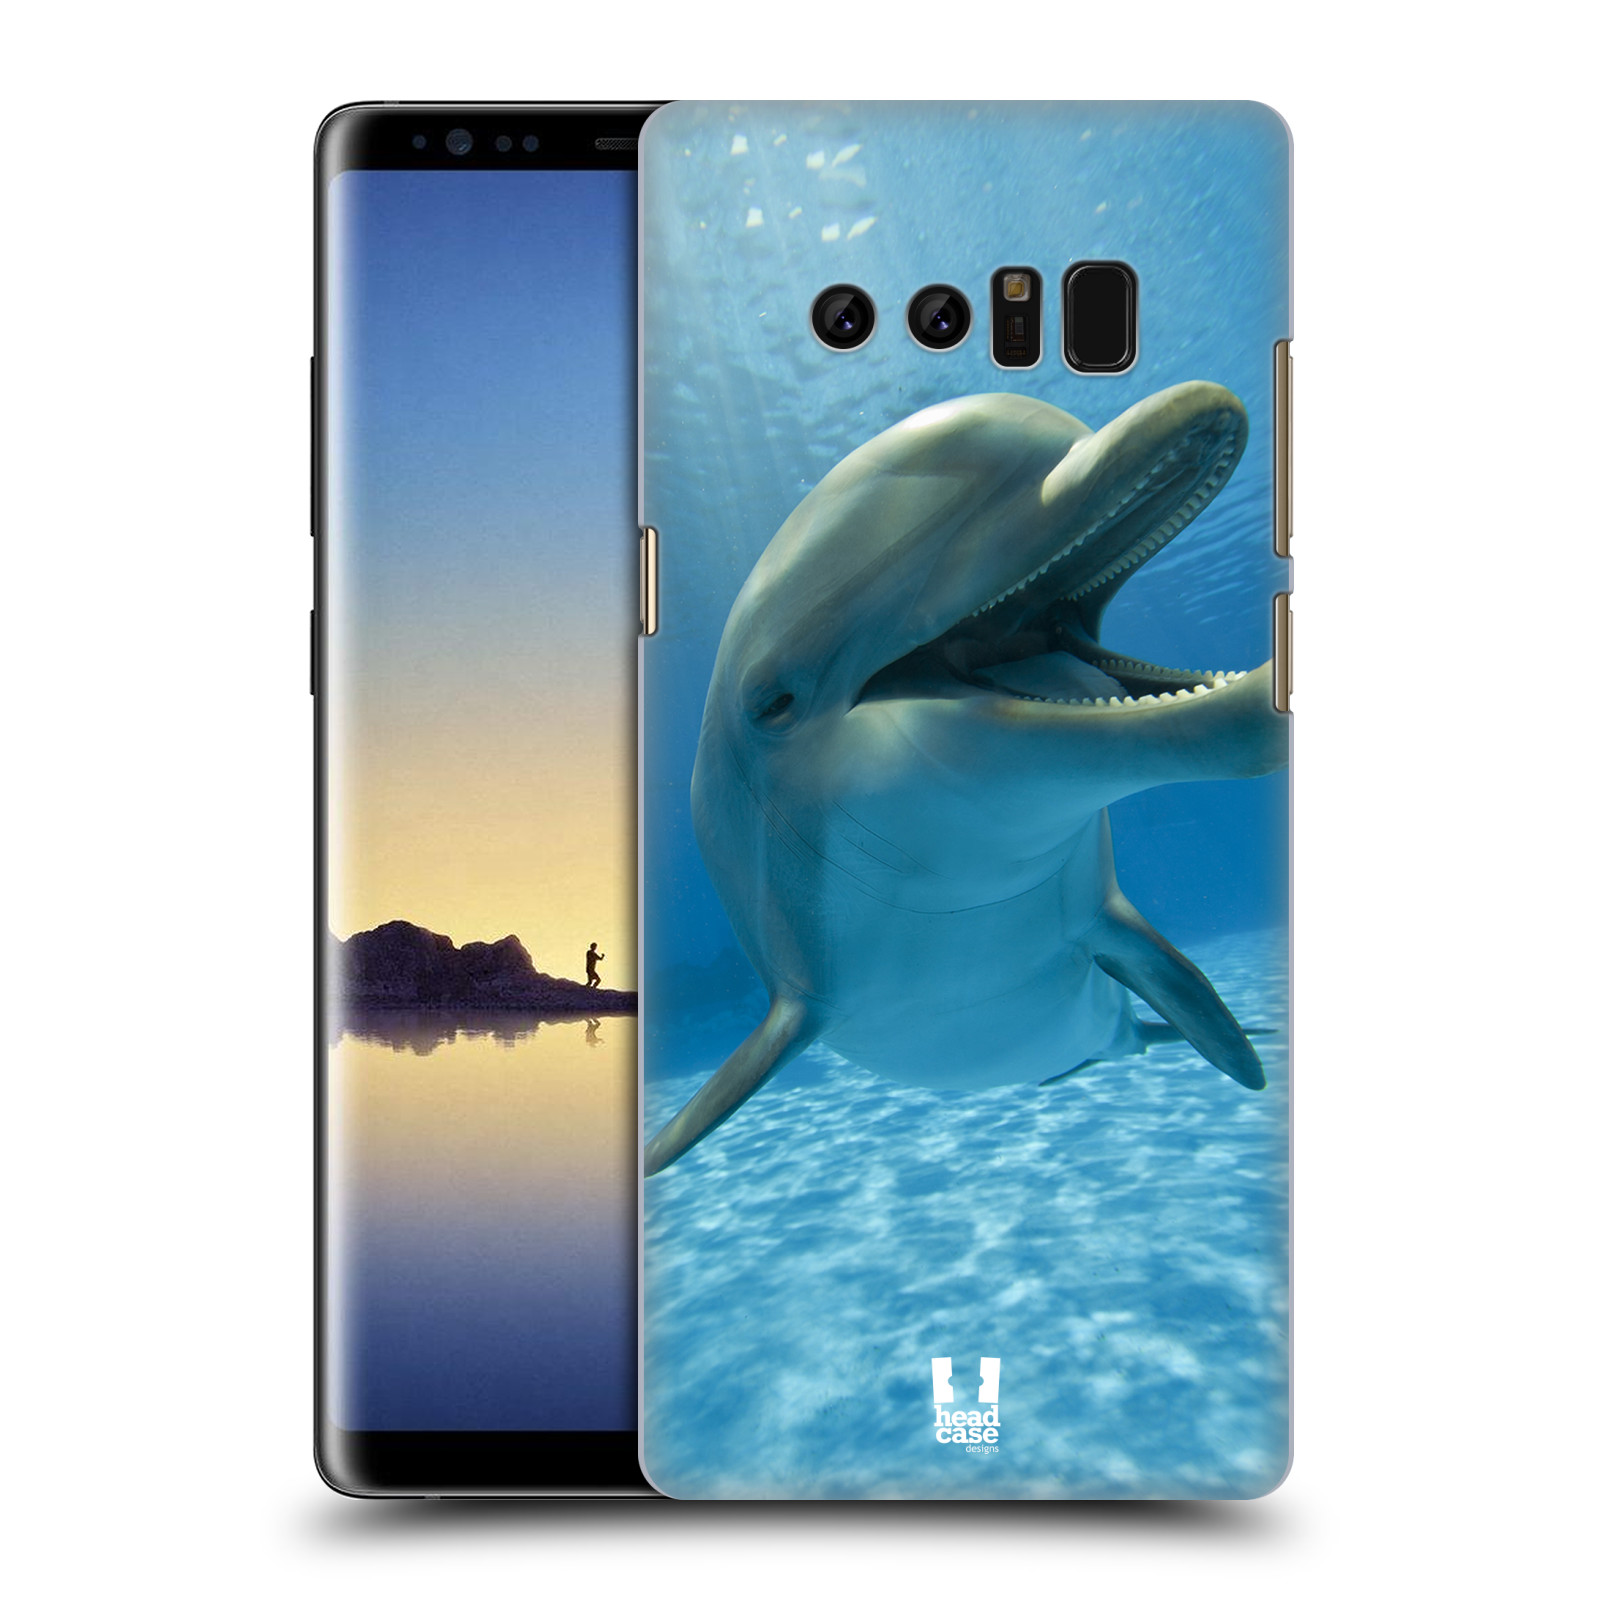 Zadní obal pro mobil Samsung Galaxy Note 8 - HEAD CASE - Svět zvířat delfín v moři